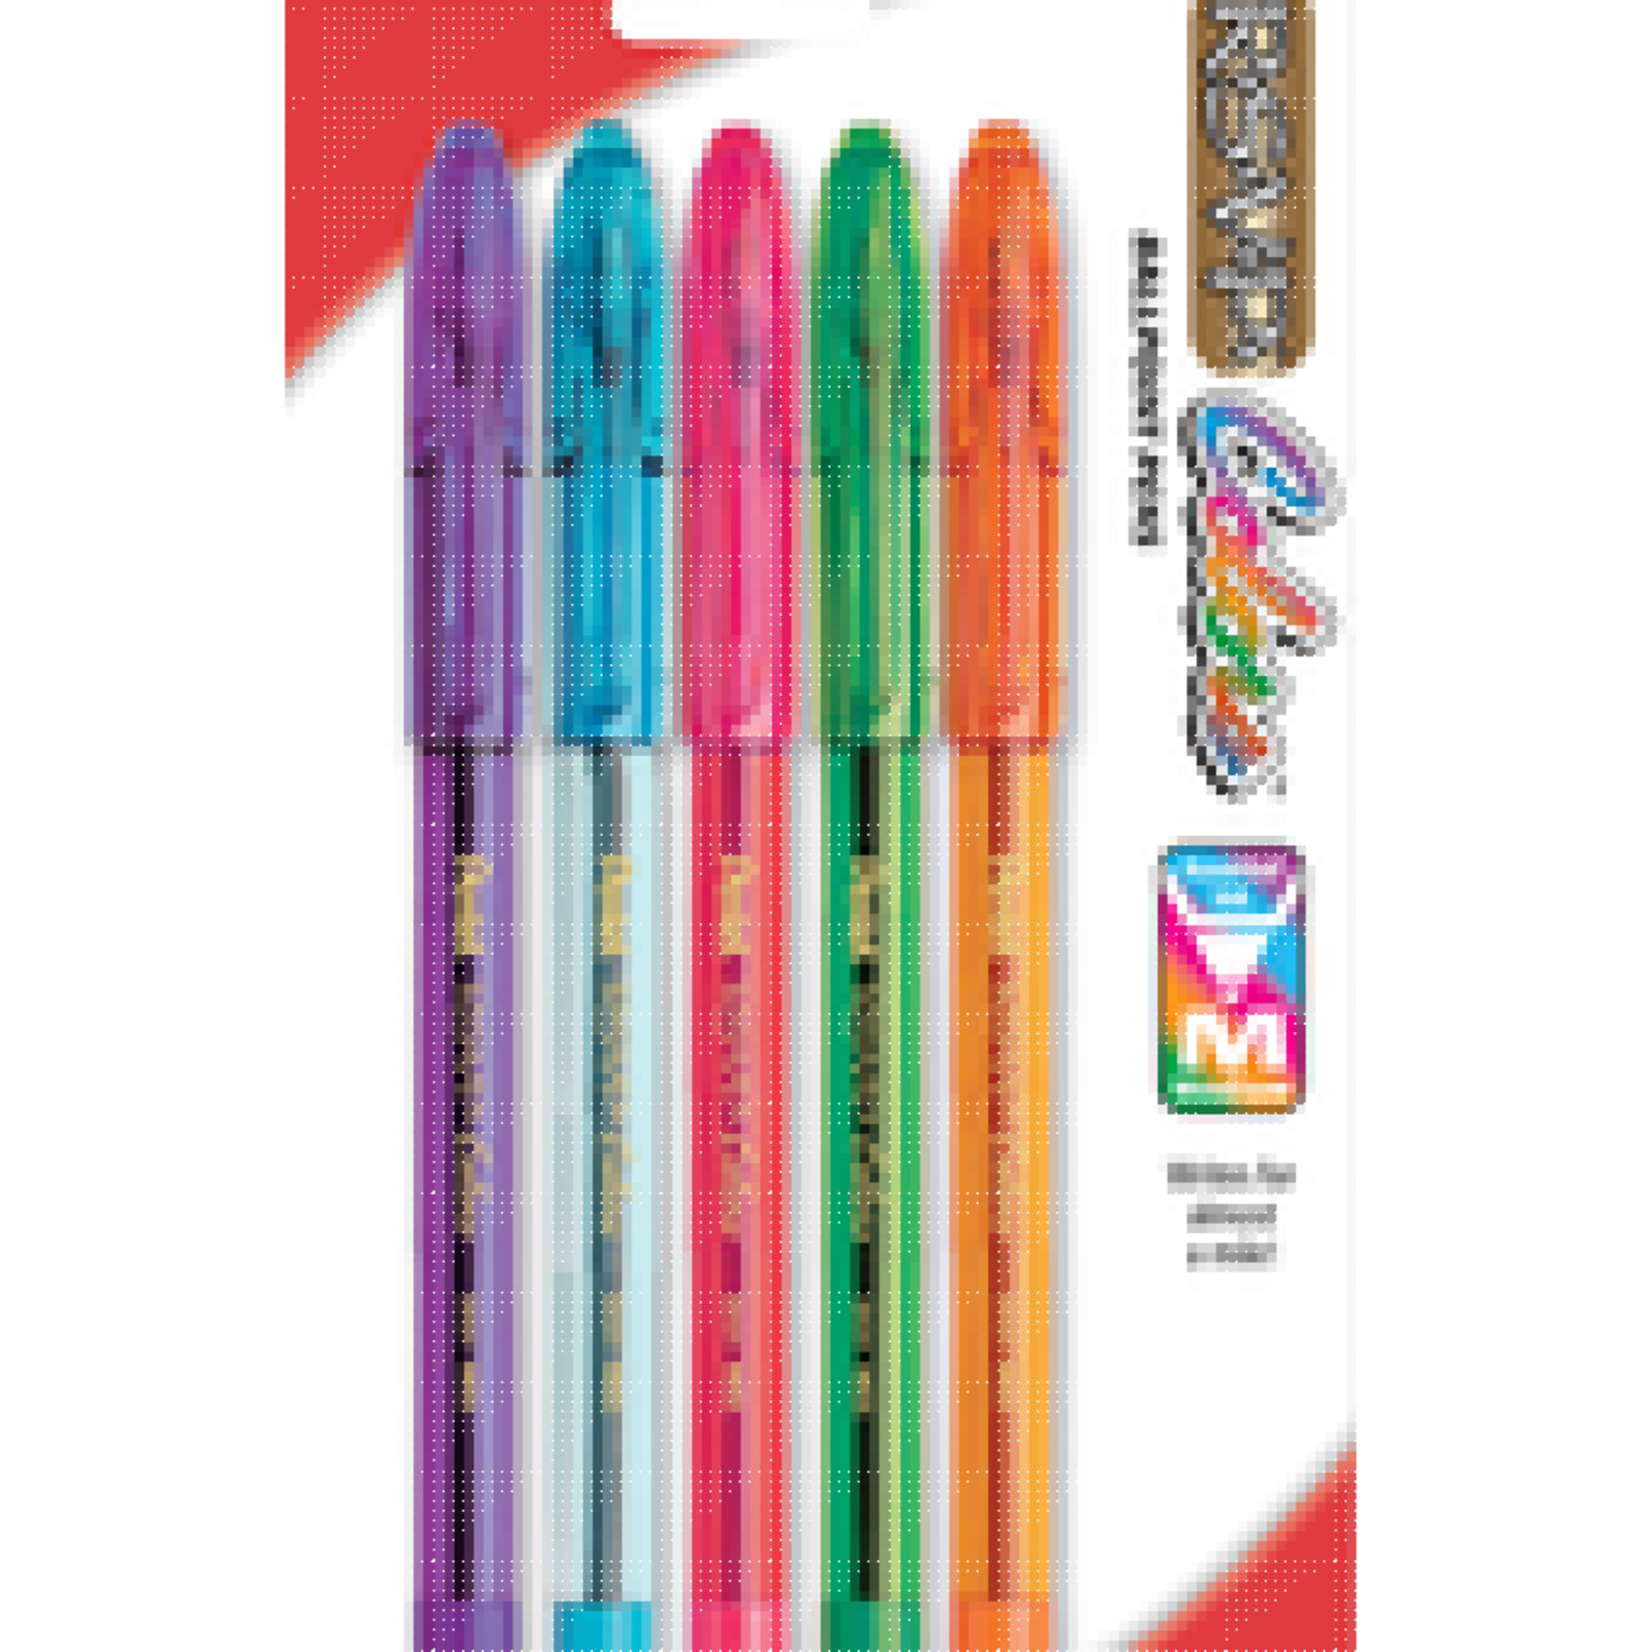 Pentel Pentel RSVP Colors Ballpoint Pen(Asst)5pk .7mm